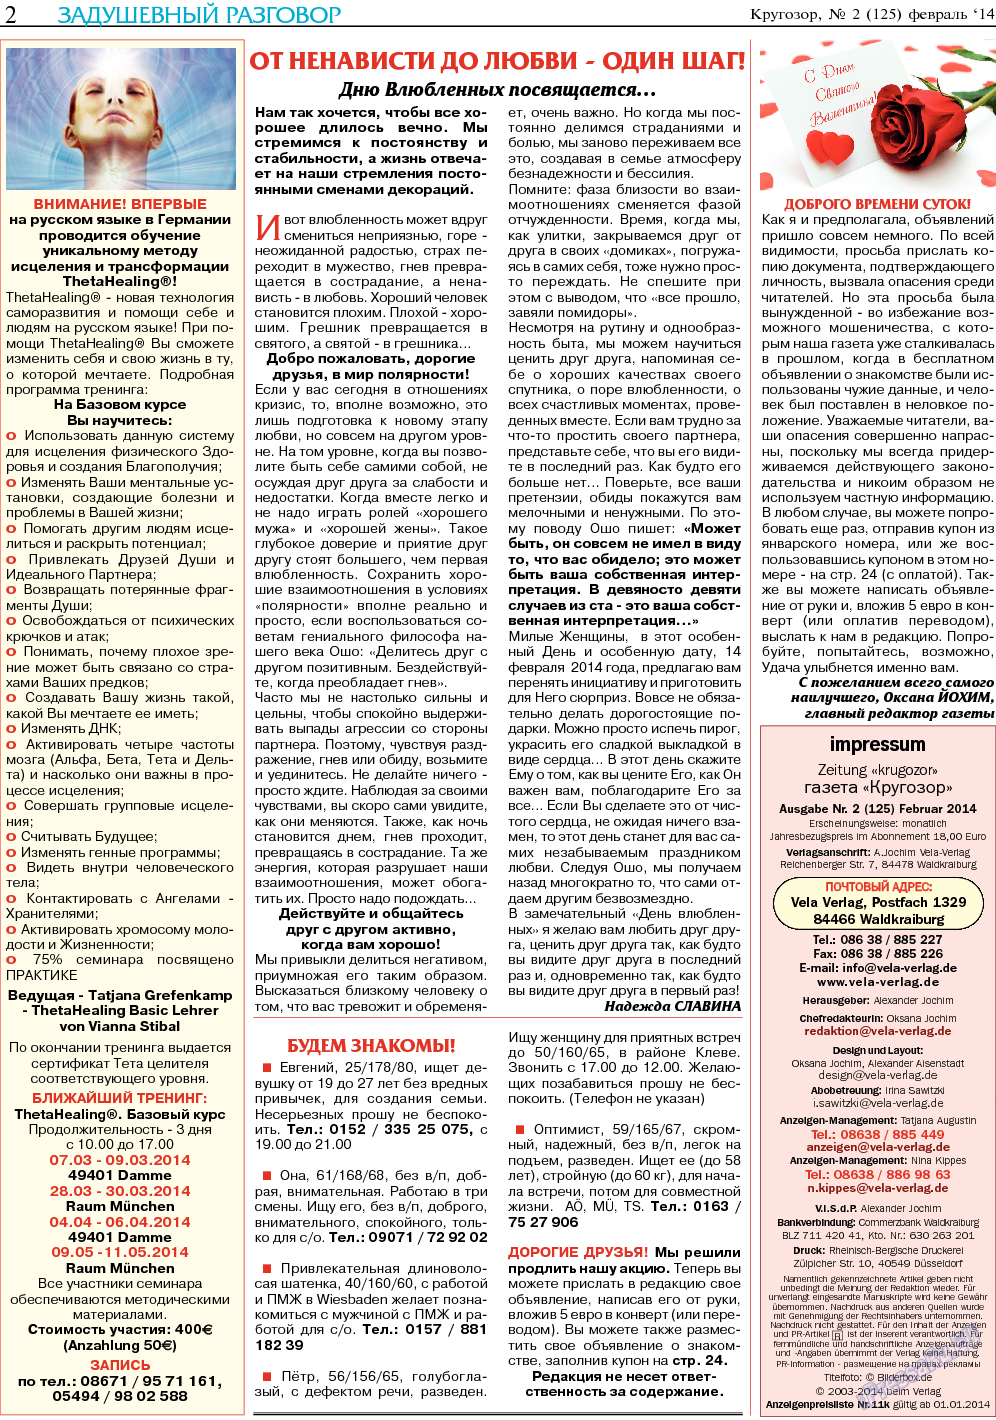 Кругозор, газета. 2014 №2 стр.2